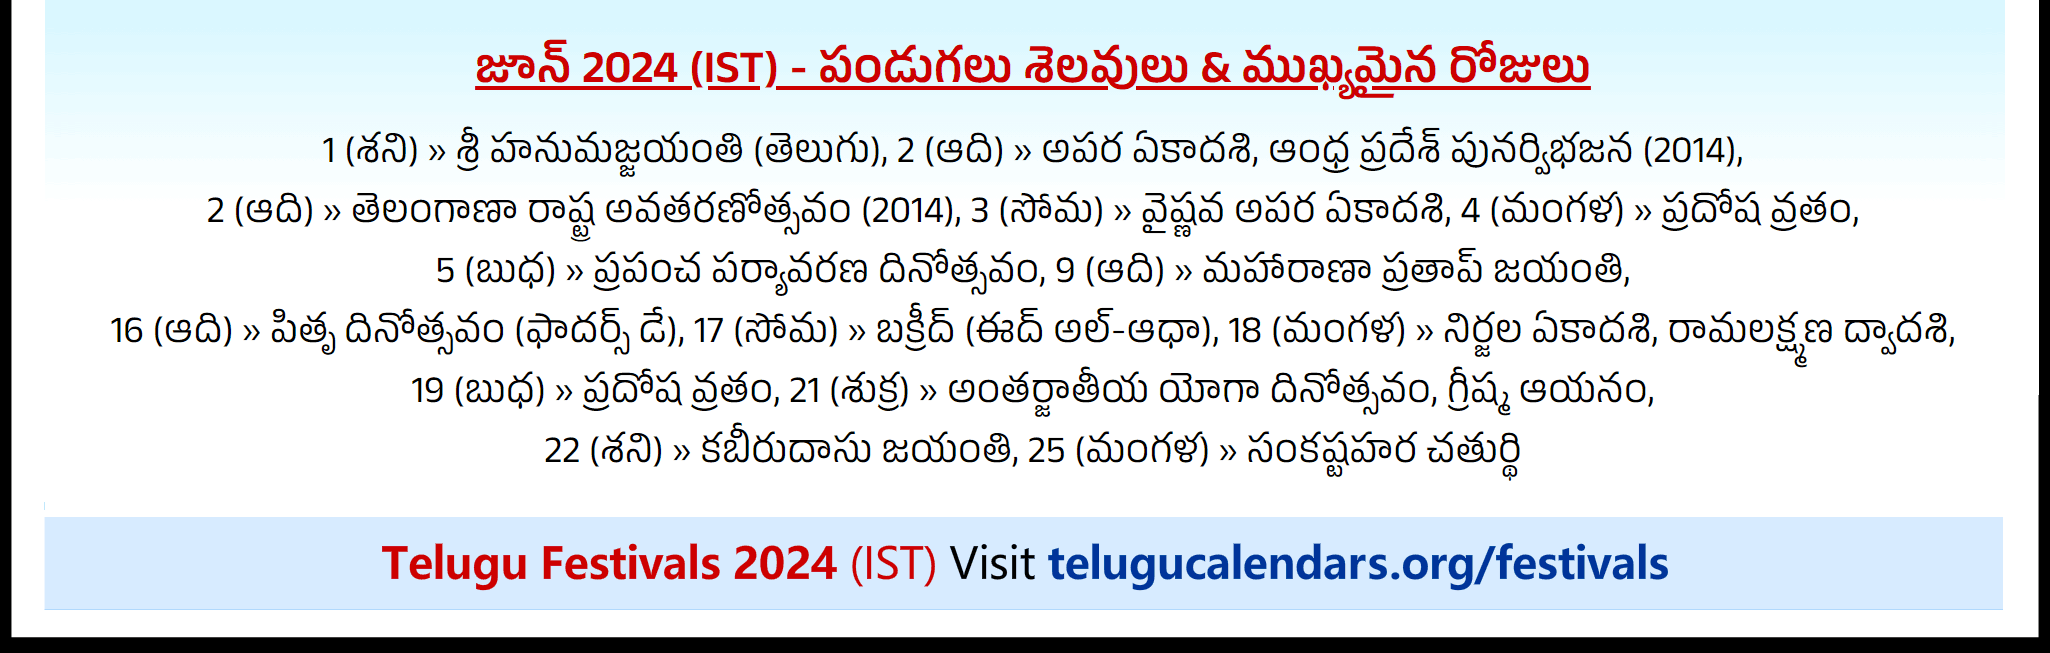 Telugu Festivals 2024 June Singapore